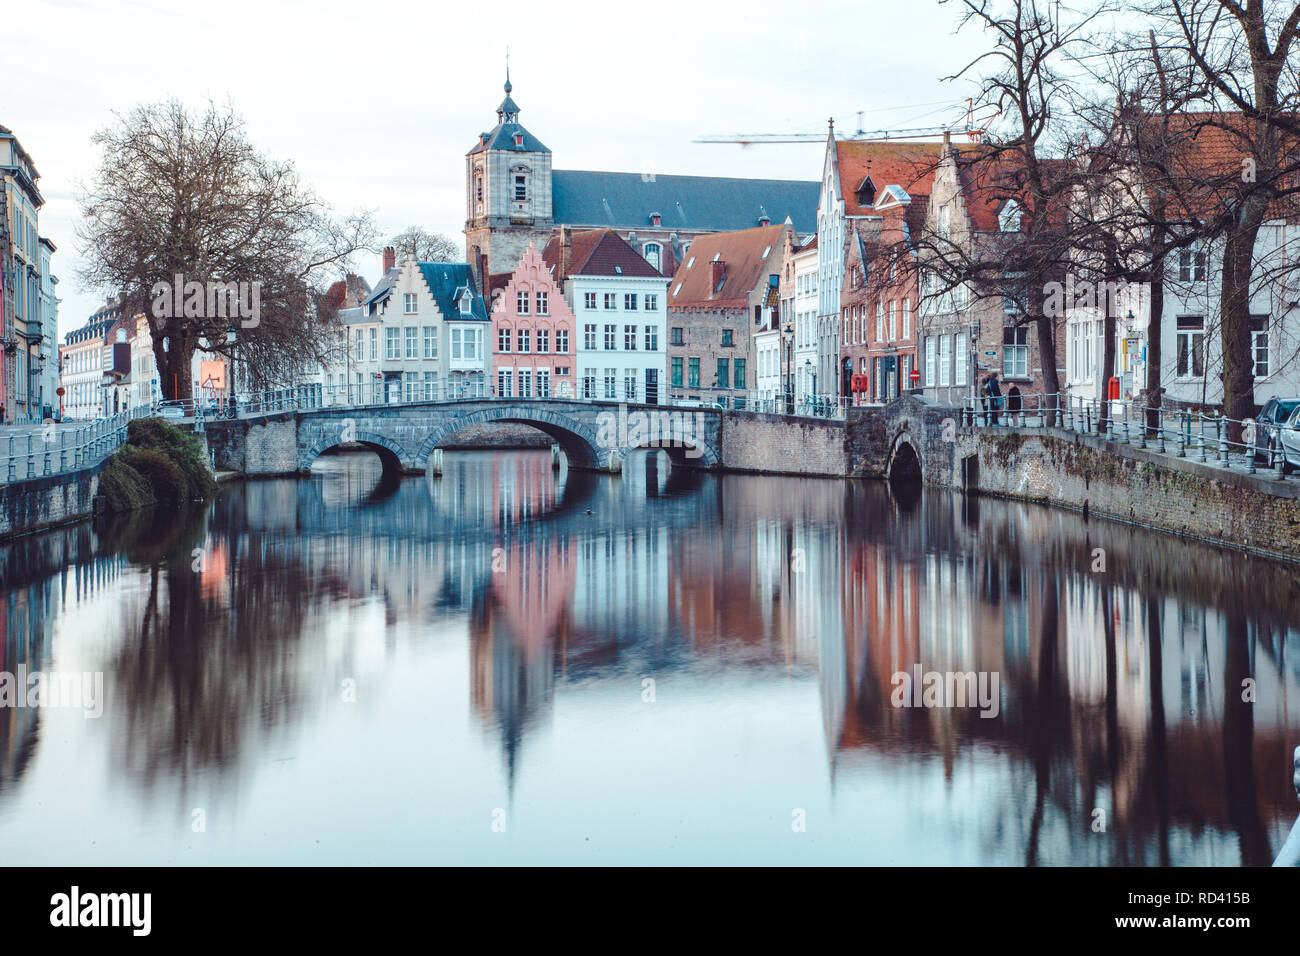 Classic vue panoramique du centre-ville historique de Bruges, souvent appelée la Venise du Nord, province de Flandre occidentale, Belgique Banque D'Images